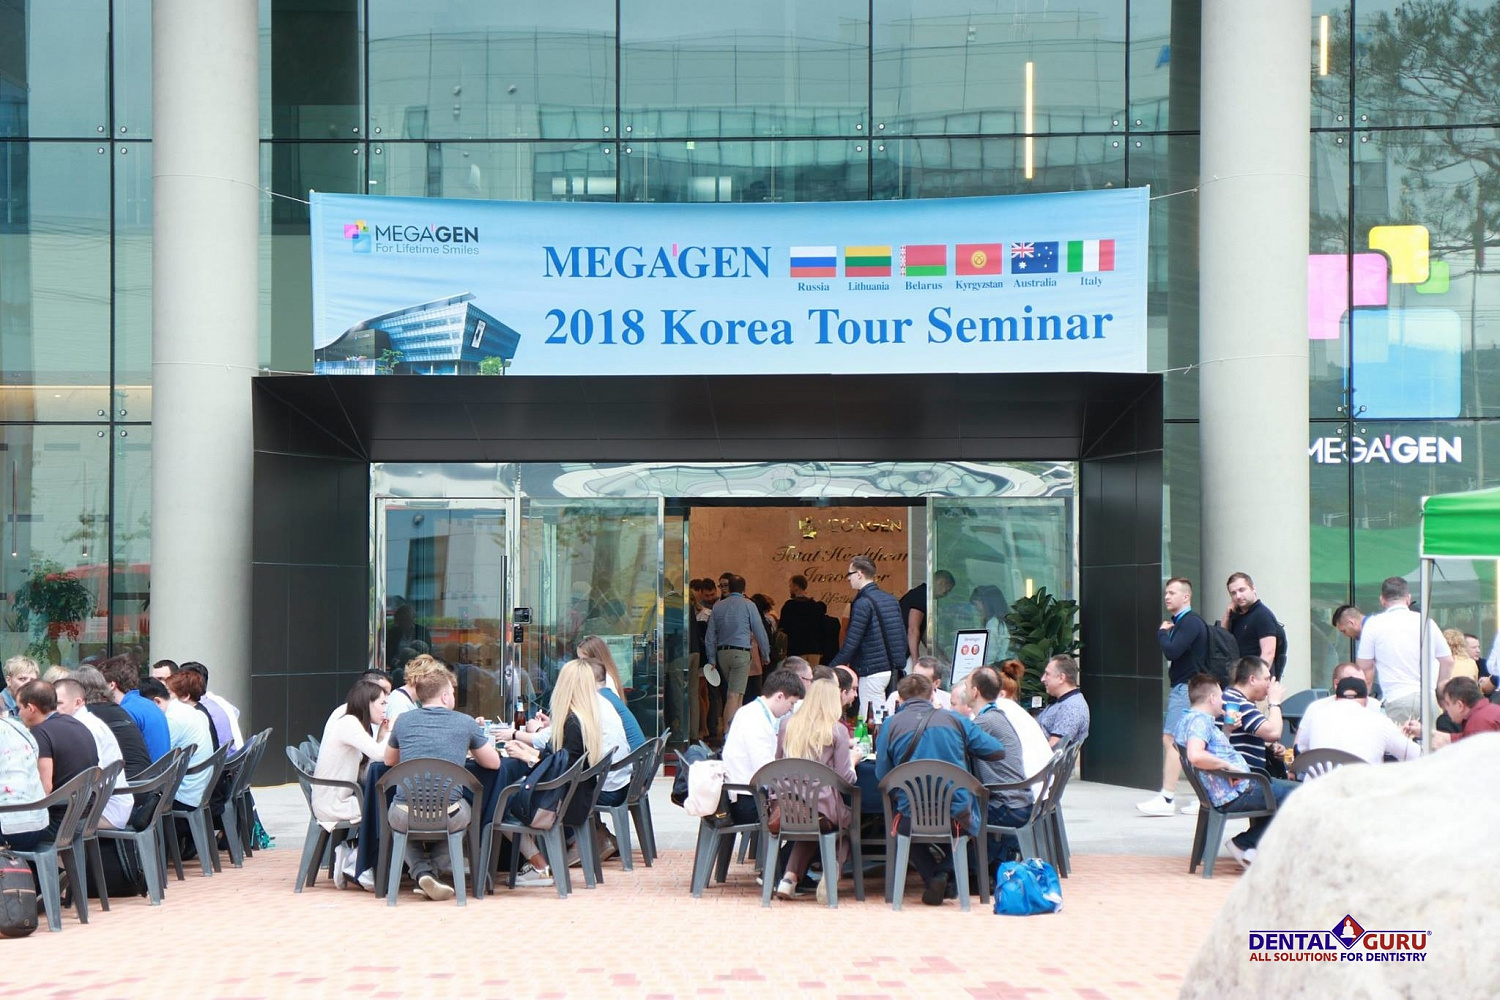 MegaGen Korea Tour Seminar с участием представителей MegaGen из компании Дентал Гуру